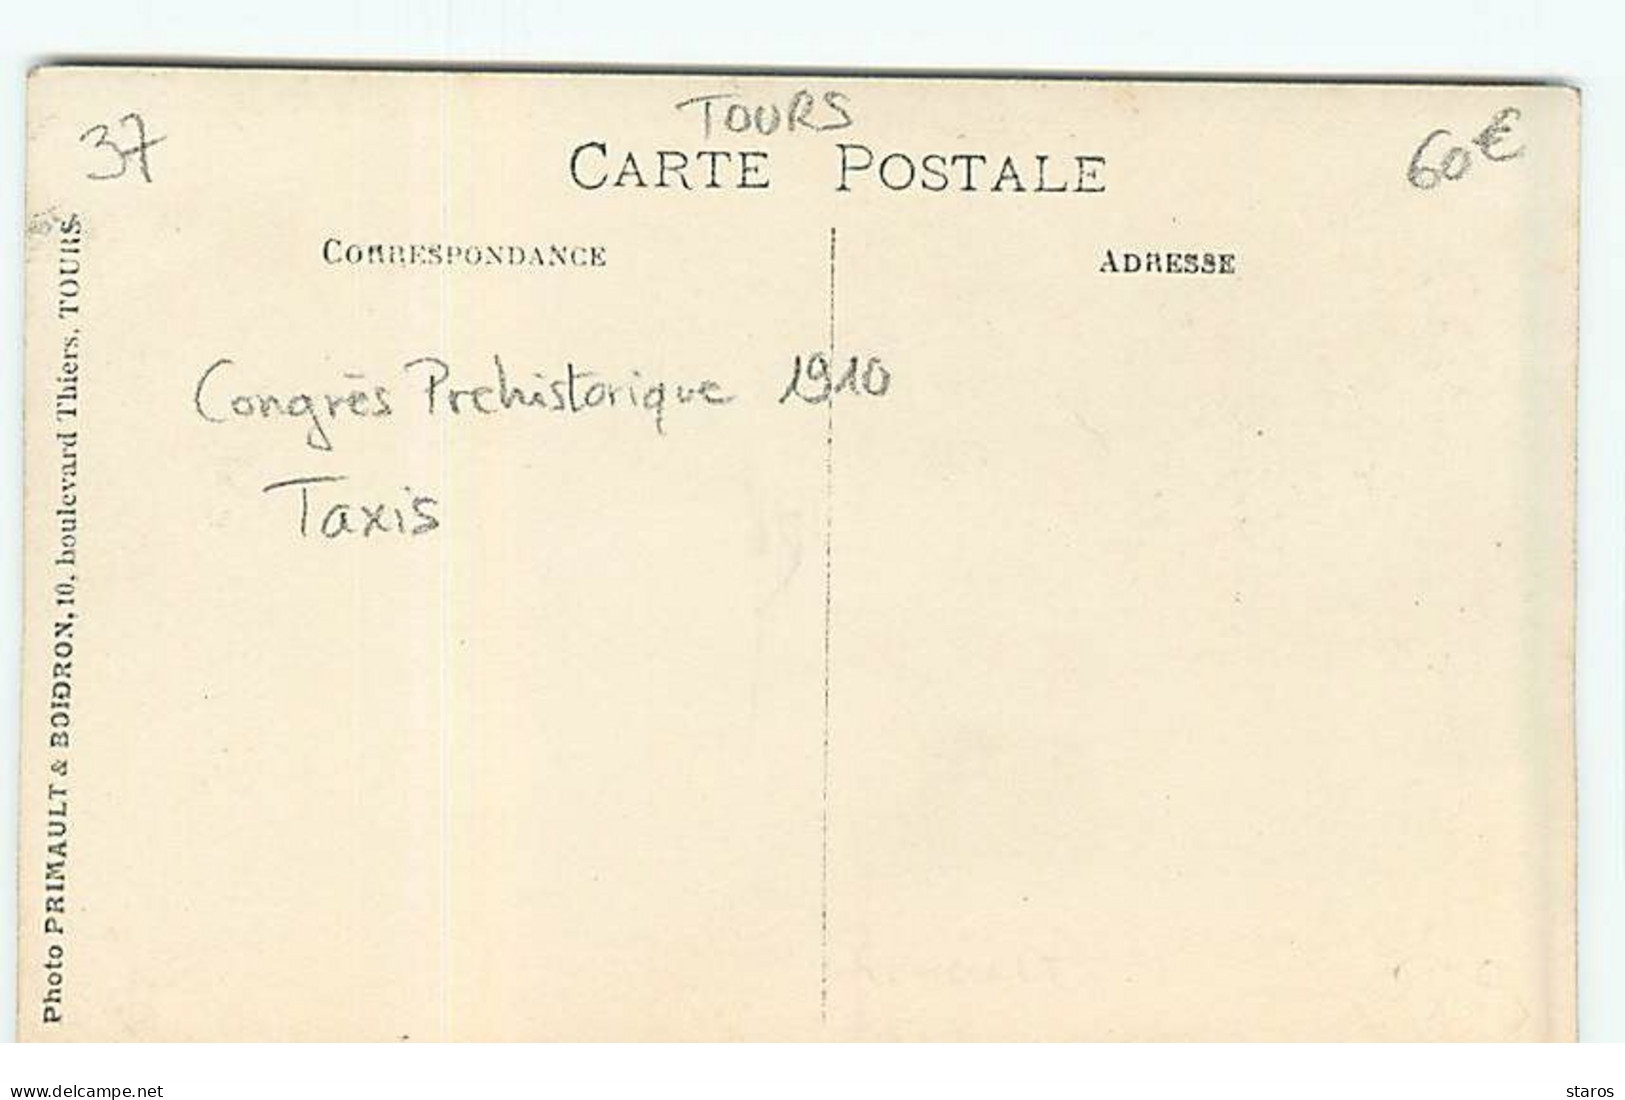 Carte Photo -TOURS - Congrès Préhistorique 1910 - Taxis - Tours